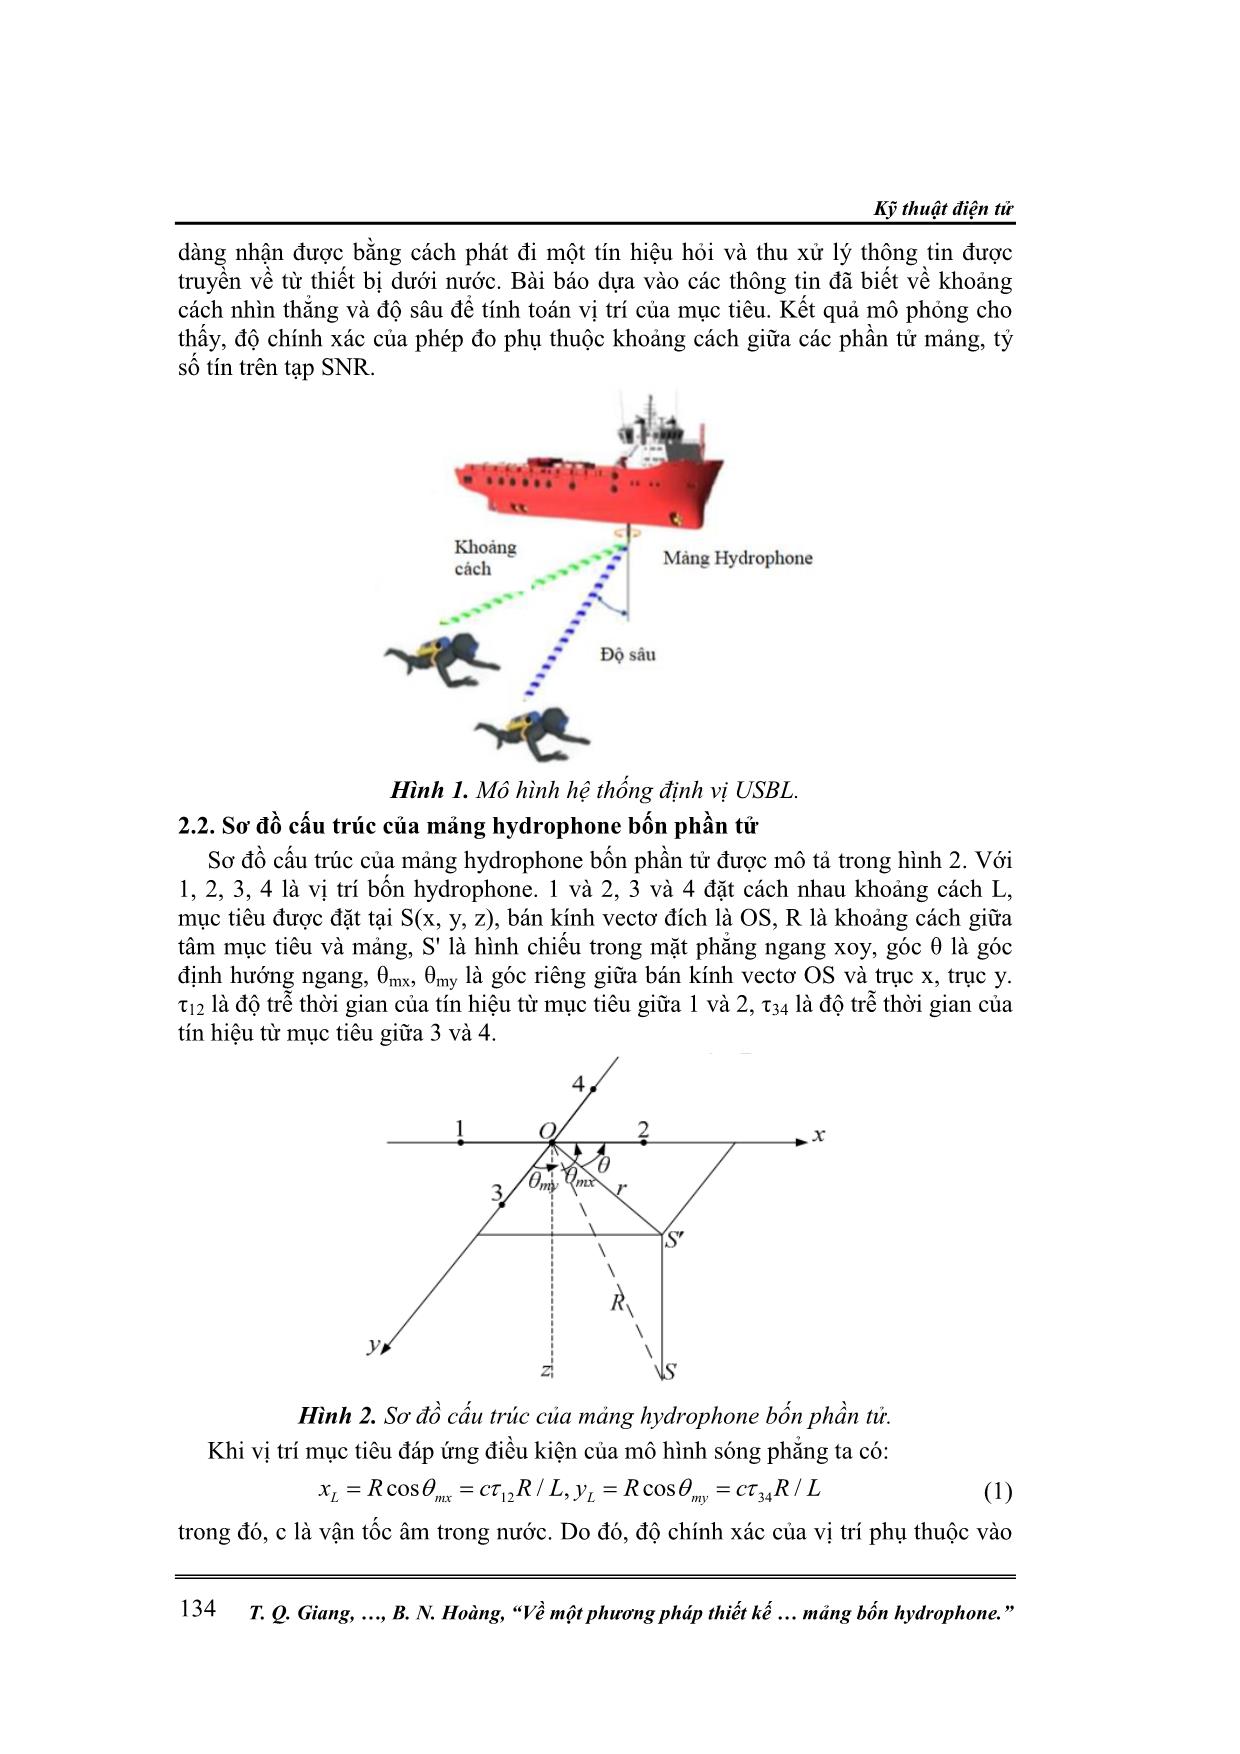 Về một phương pháp thiết kế hệ thống định vị thủy âm chủ động kiểu usbl sử dụng mảng bốn hydrophone trang 2